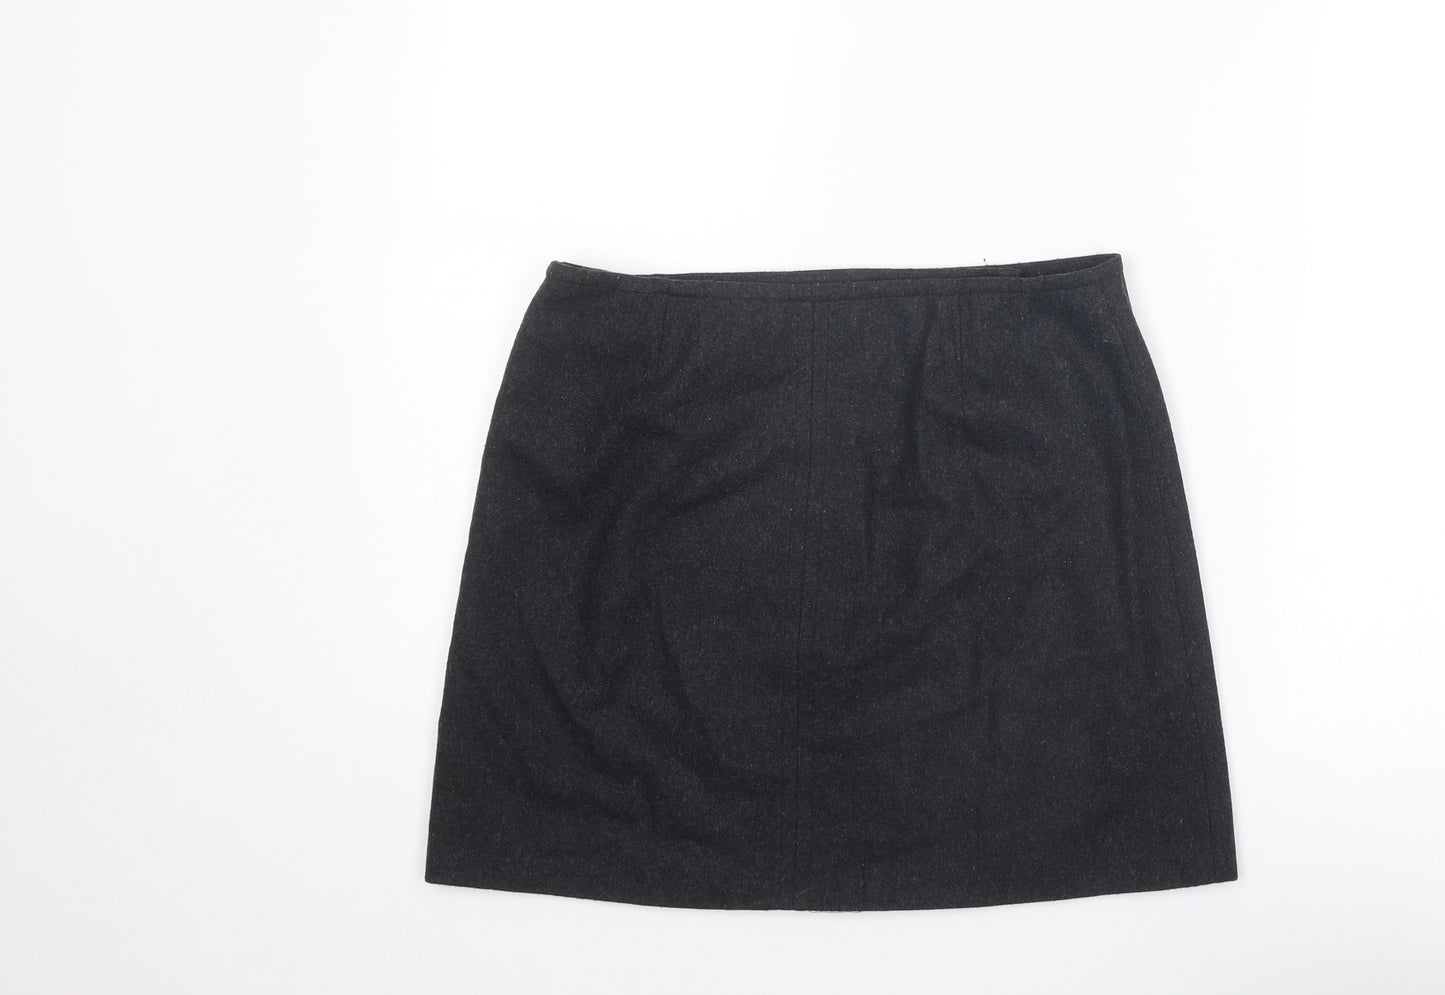 Mint Velvet Womens Grey Wool A-Line Skirt Size 10 Button